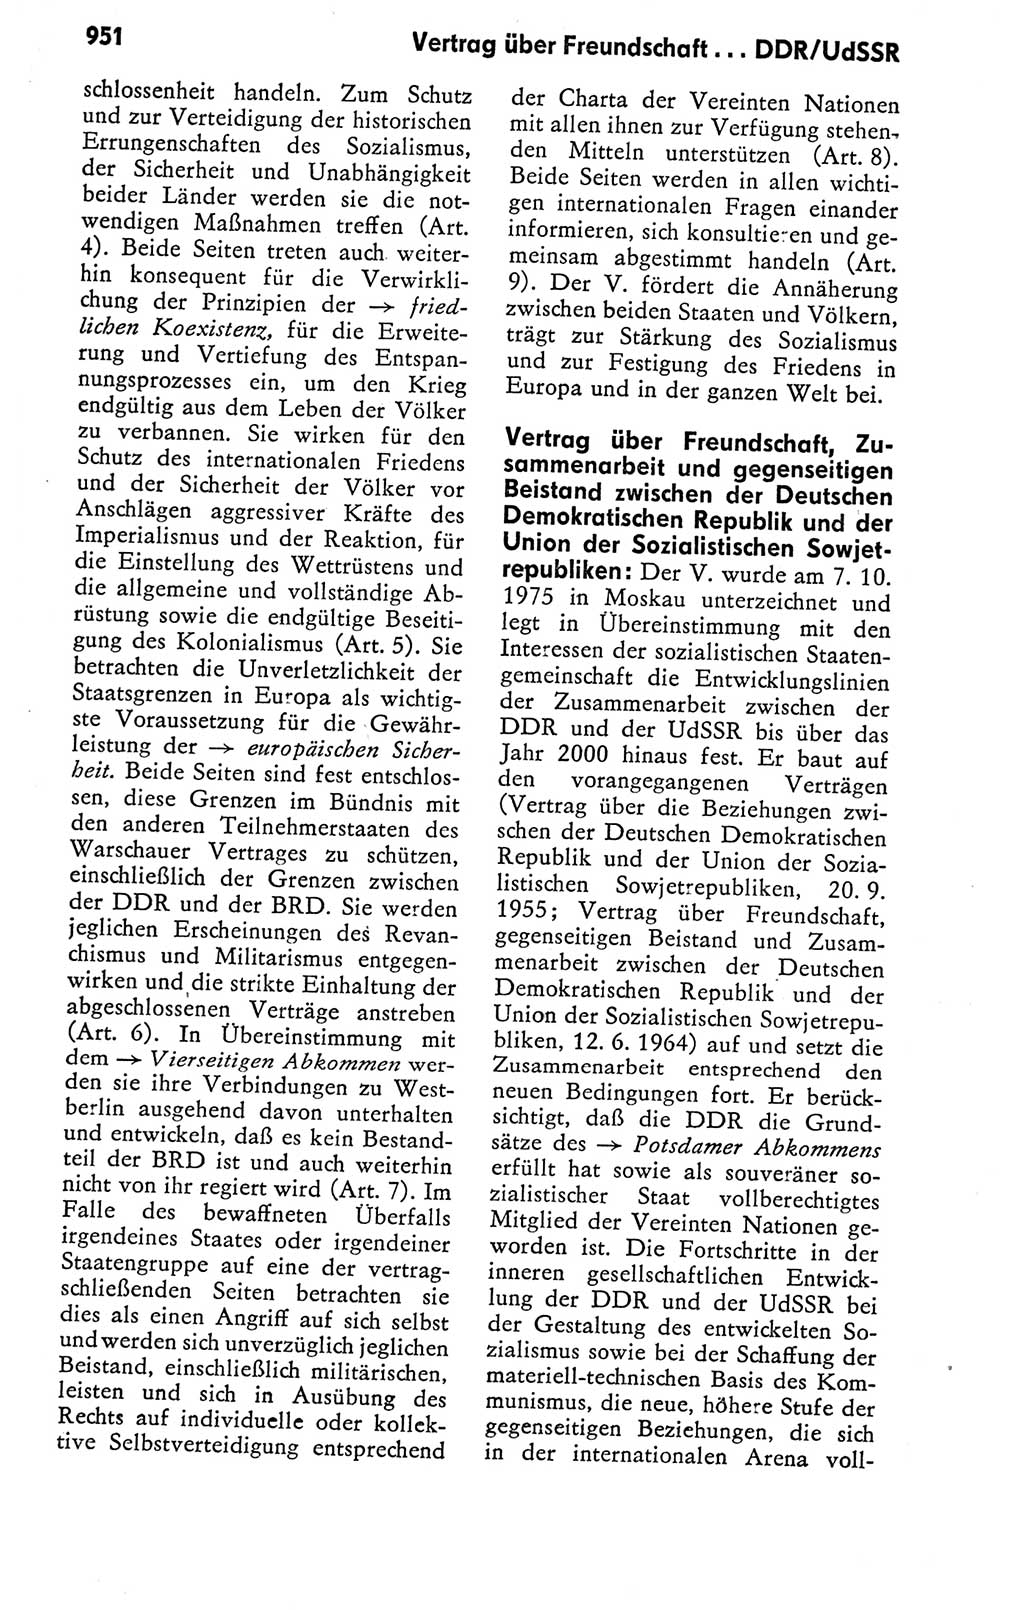 Kleines politisches Wörterbuch [Deutsche Demokratische Republik (DDR)] 1978, Seite 951 (Kl. pol. Wb. DDR 1978, S. 951)